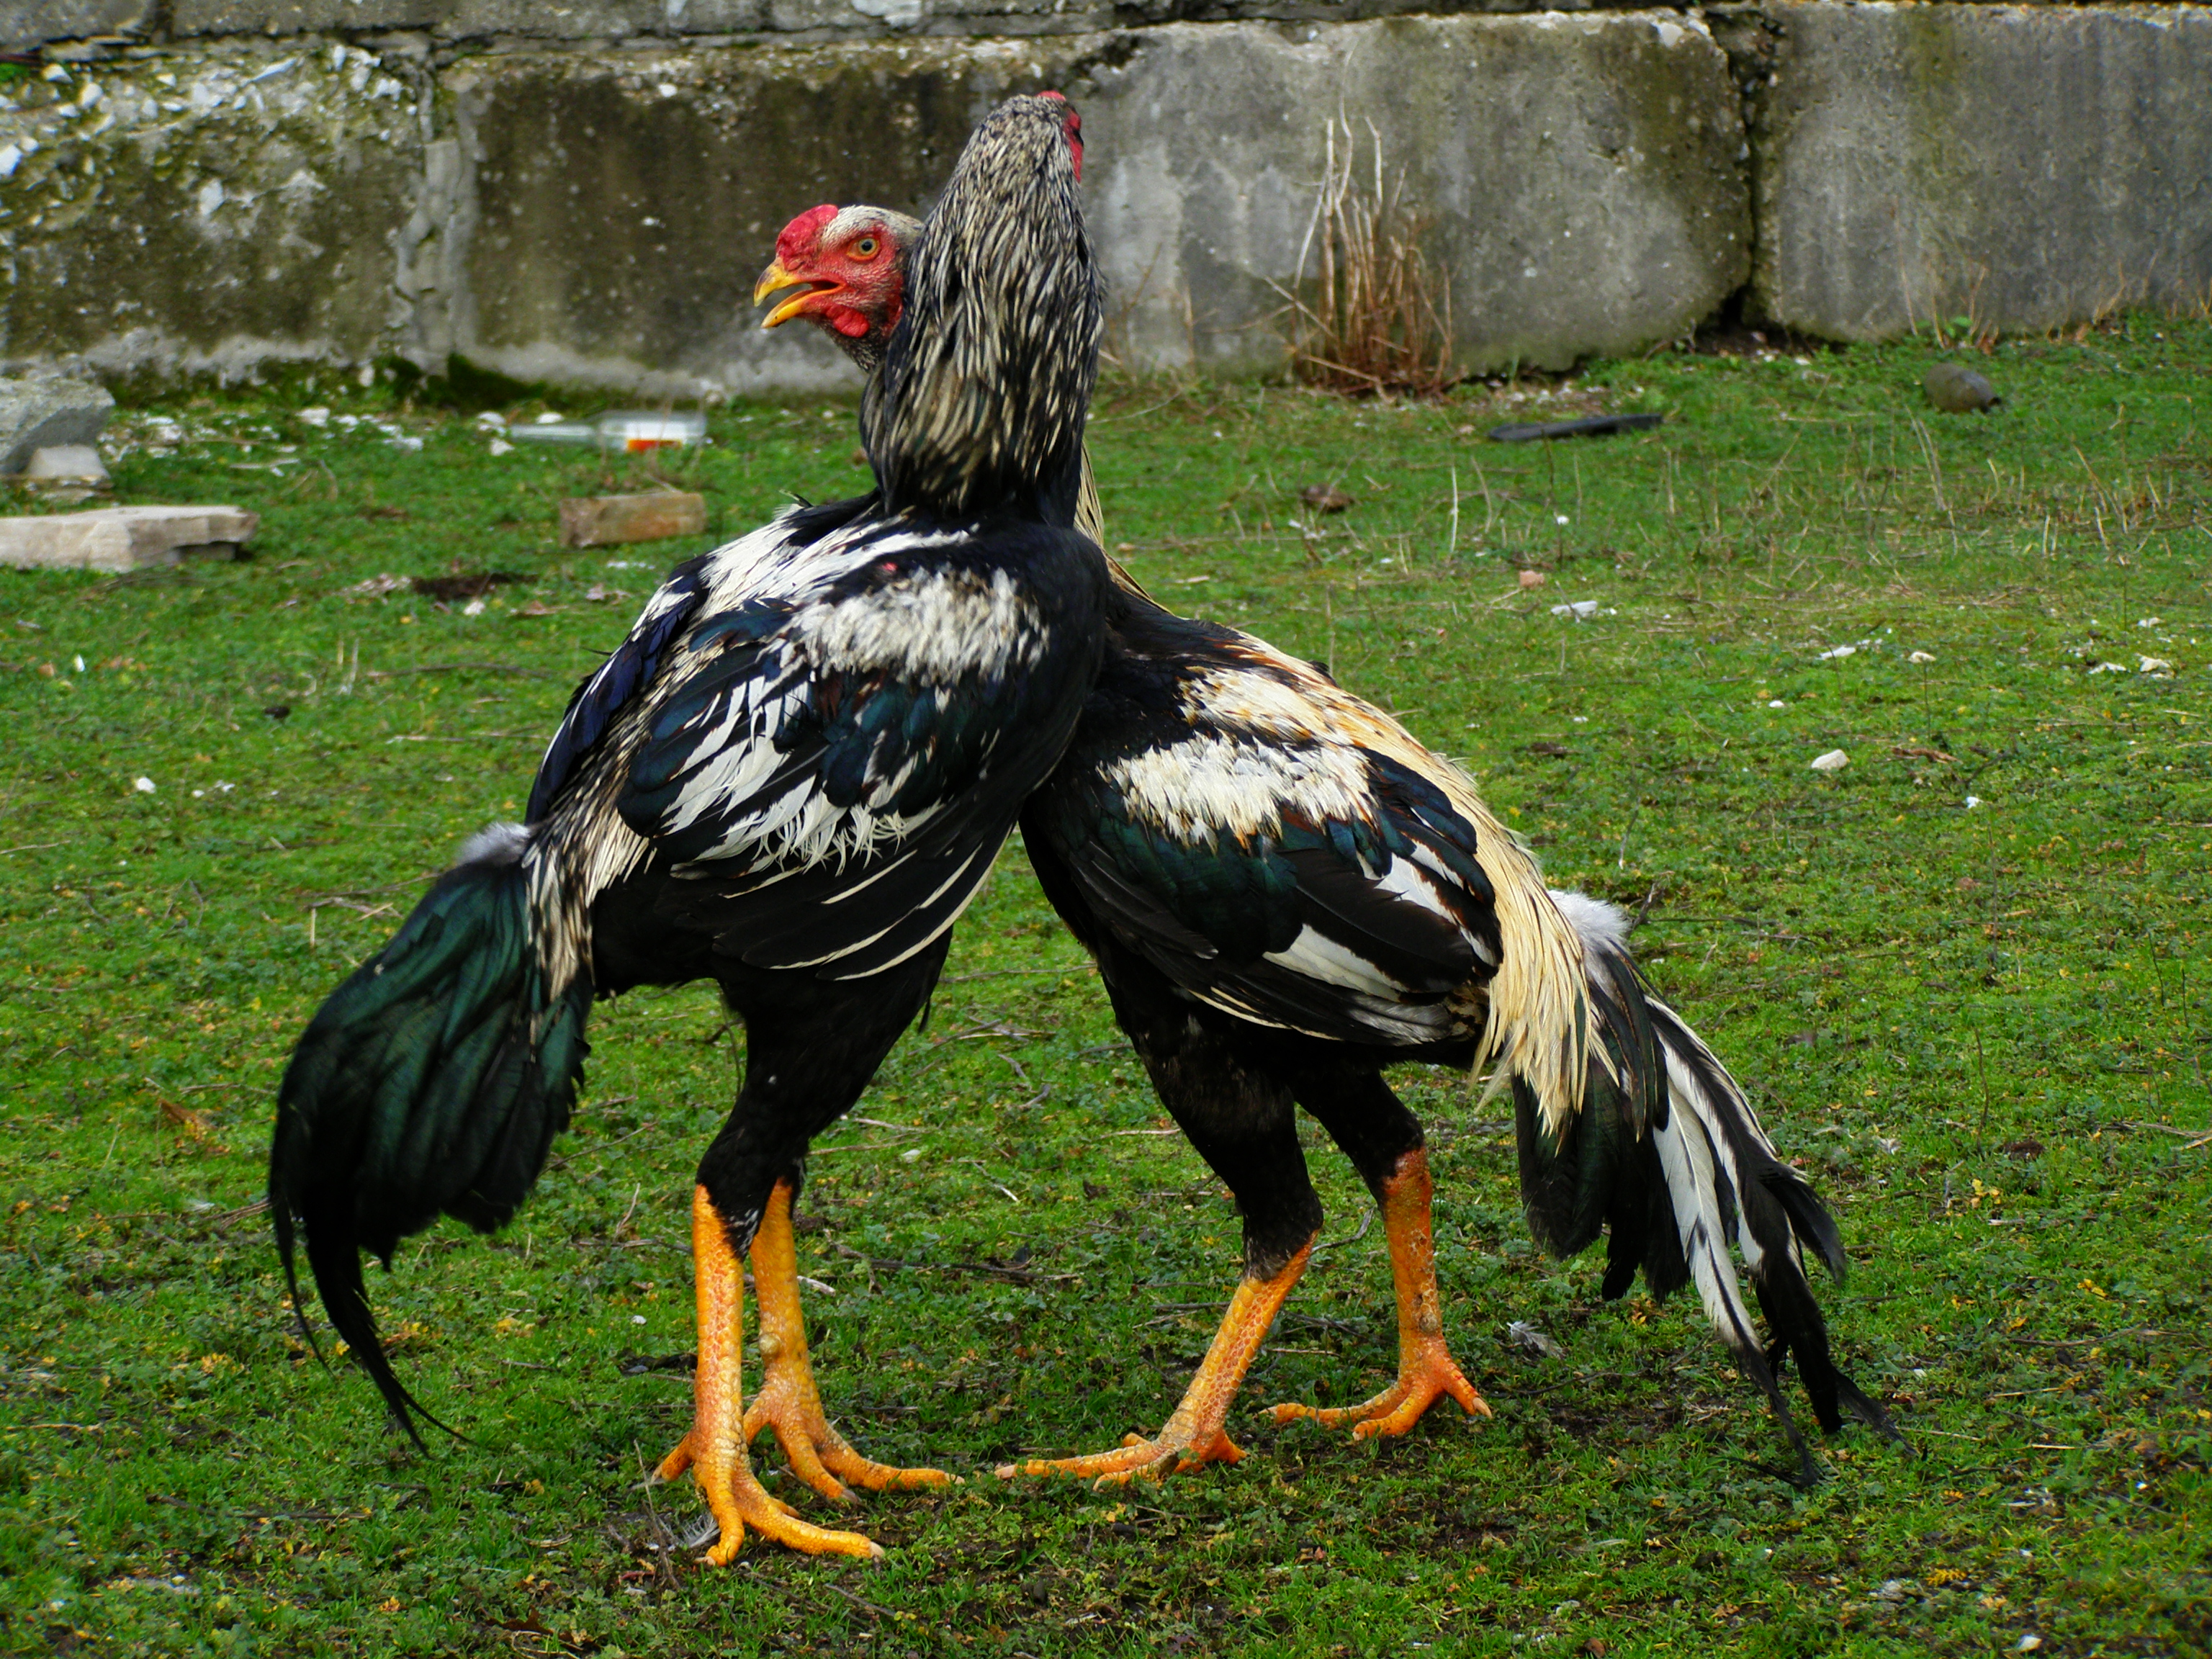 Дакан (Куланги) - бойцовая порода кур. Описание, содержание, уход, выращивание, кормление